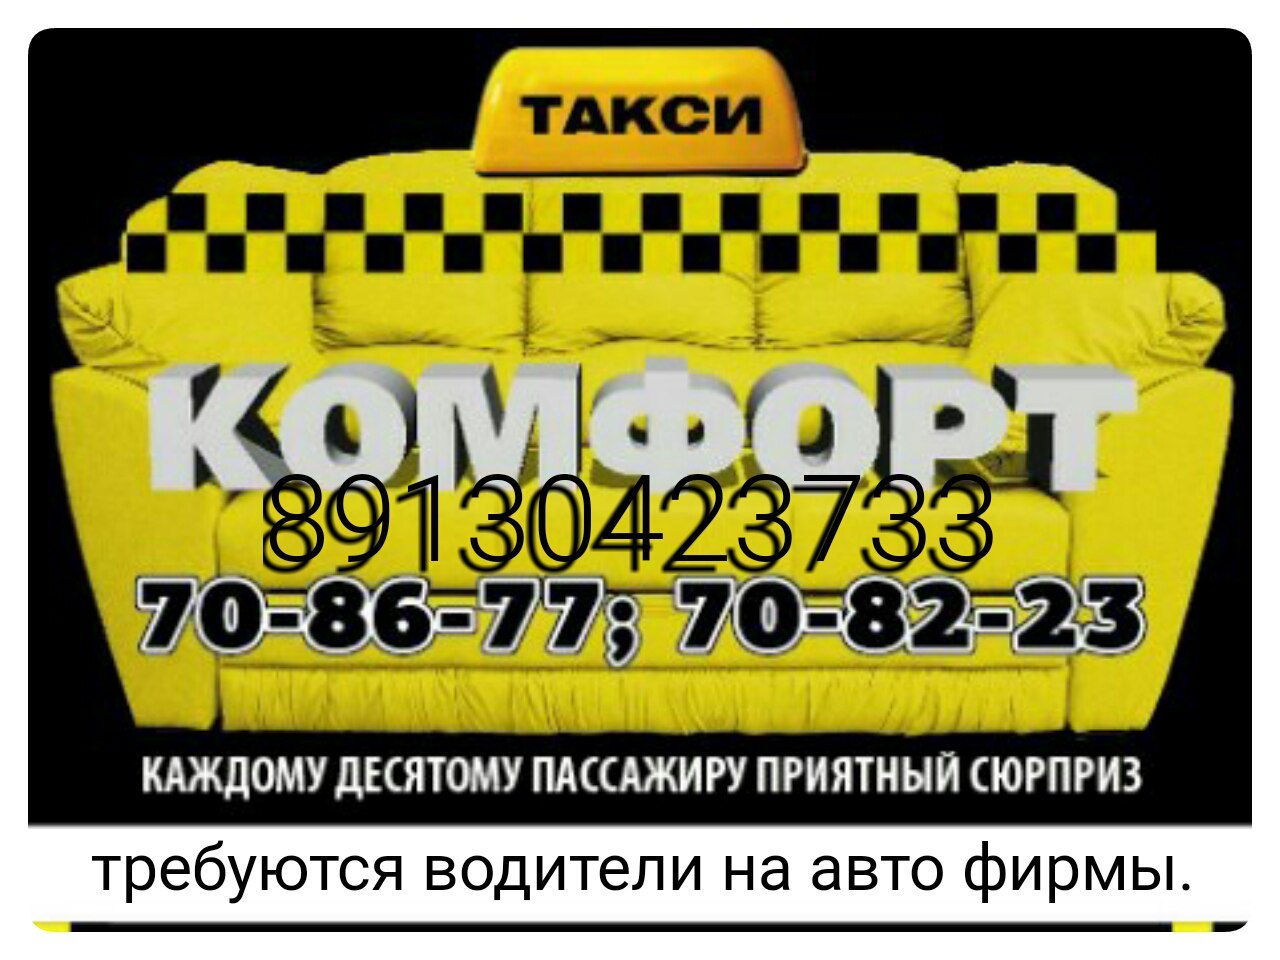 Такси норильск телефон. Такси комфорт. Такси комфорт Норильск. Требуются водители в такси. Такси Железногорск.